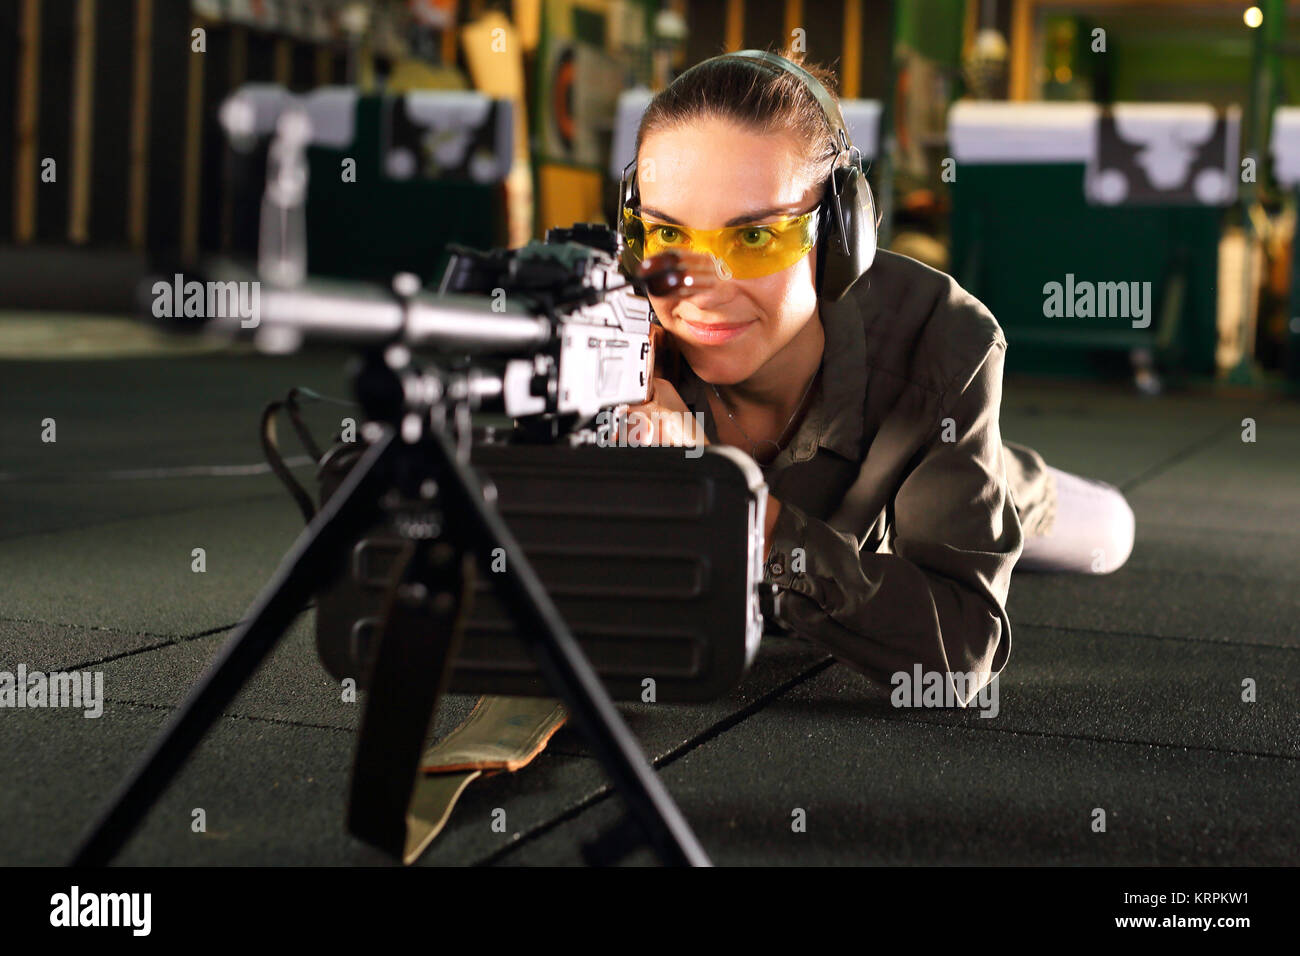 Strzelnica. Kobieta z karabinem maszynowym. Strzelectwo sportowe. Foto Stock